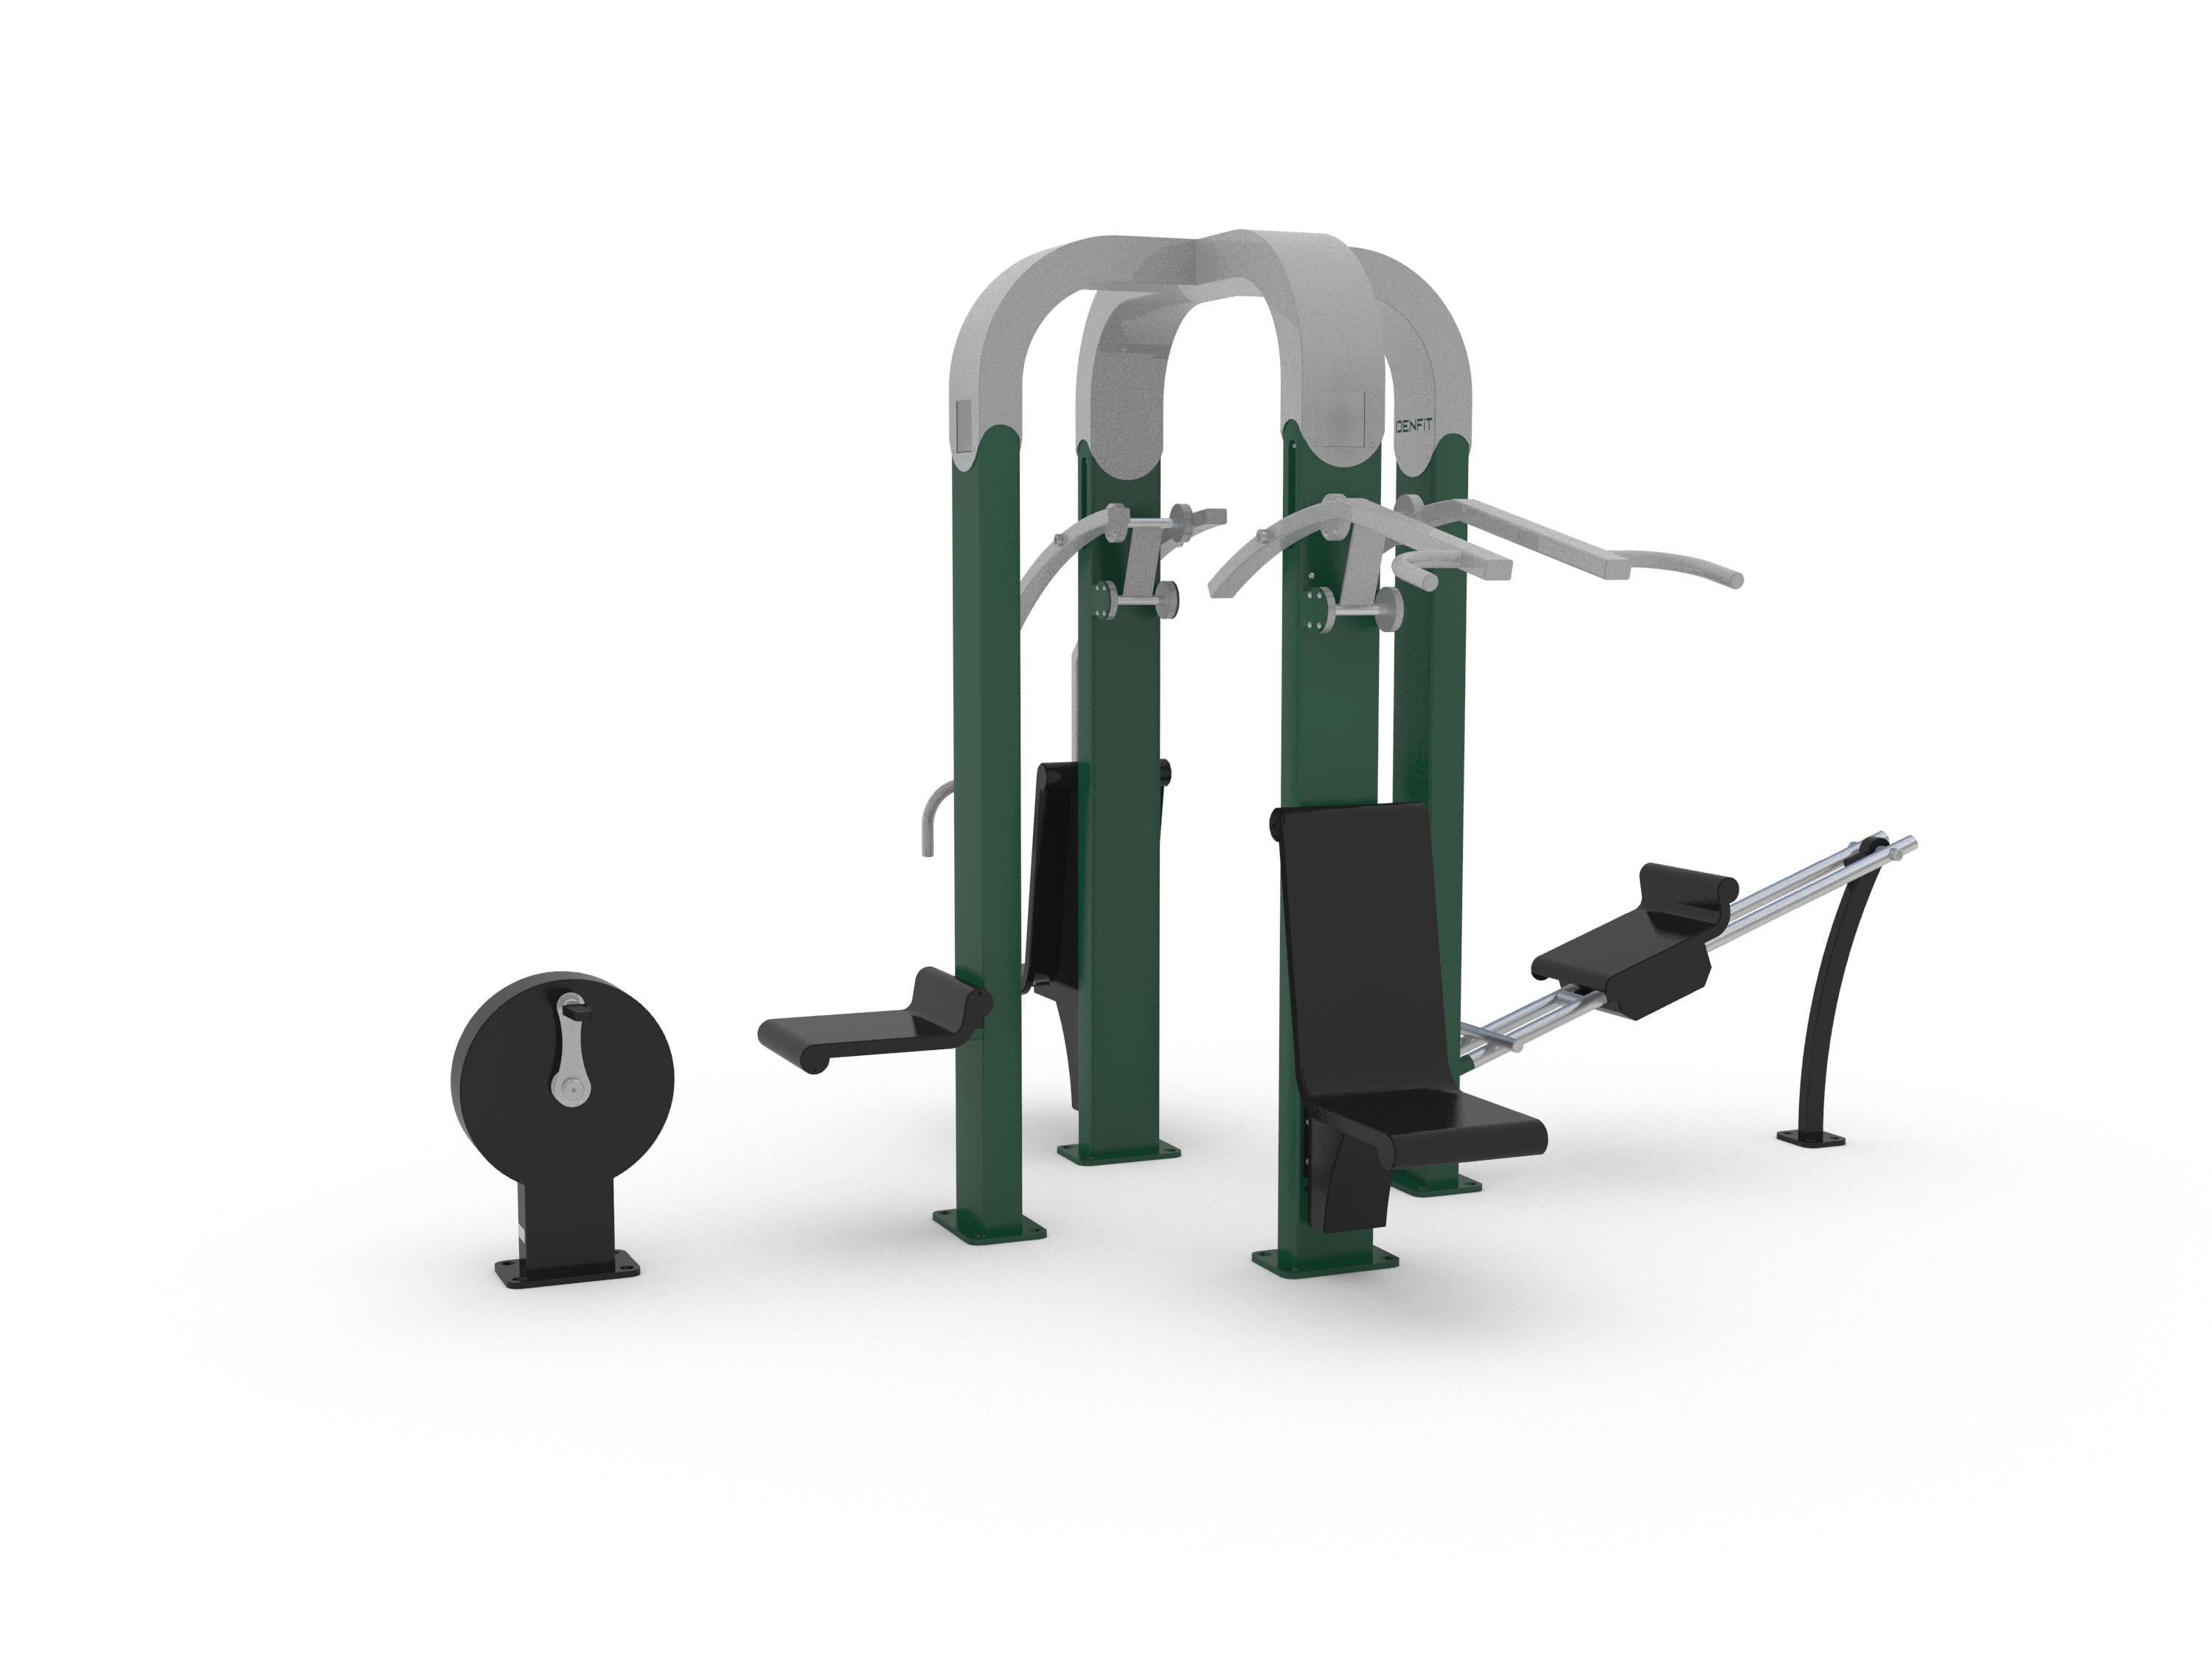 Equipement de fitness extérieur - Denfit Gym combi MultiMax - 4 - 8065123 - Hags_0